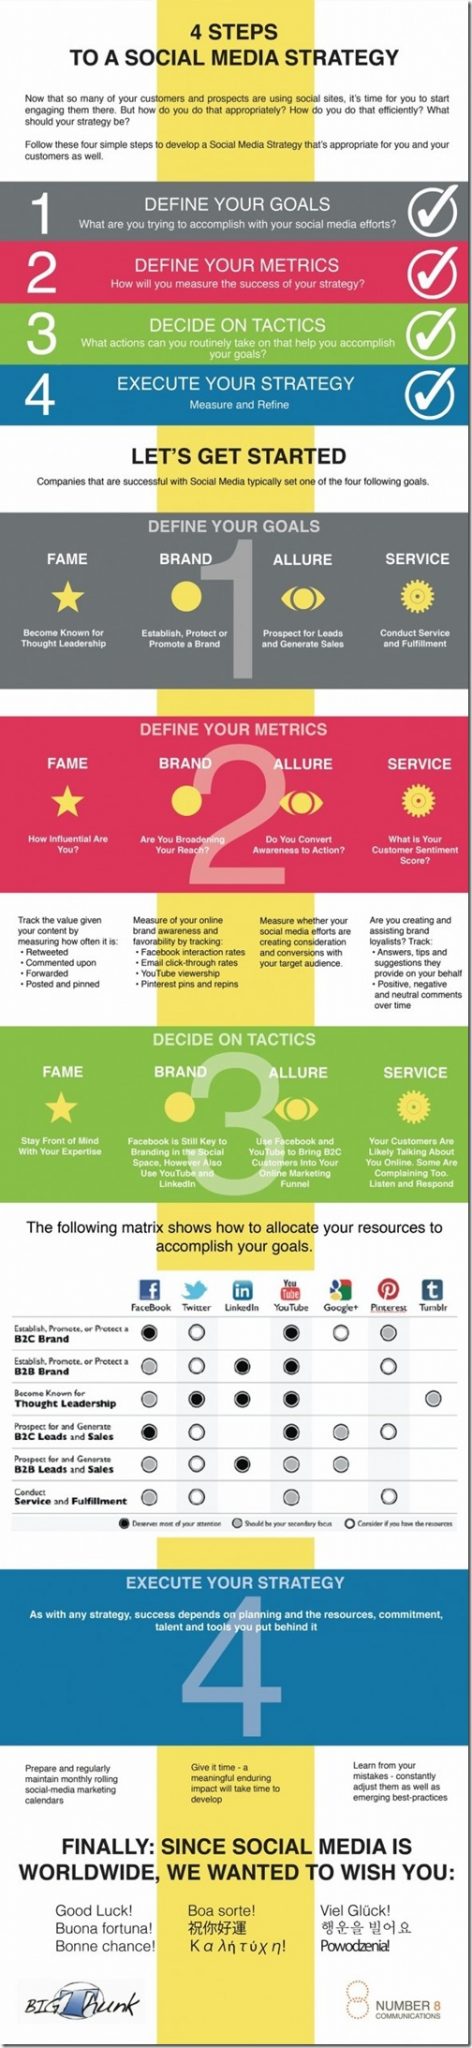 4 Steps to a Social Media Strategy